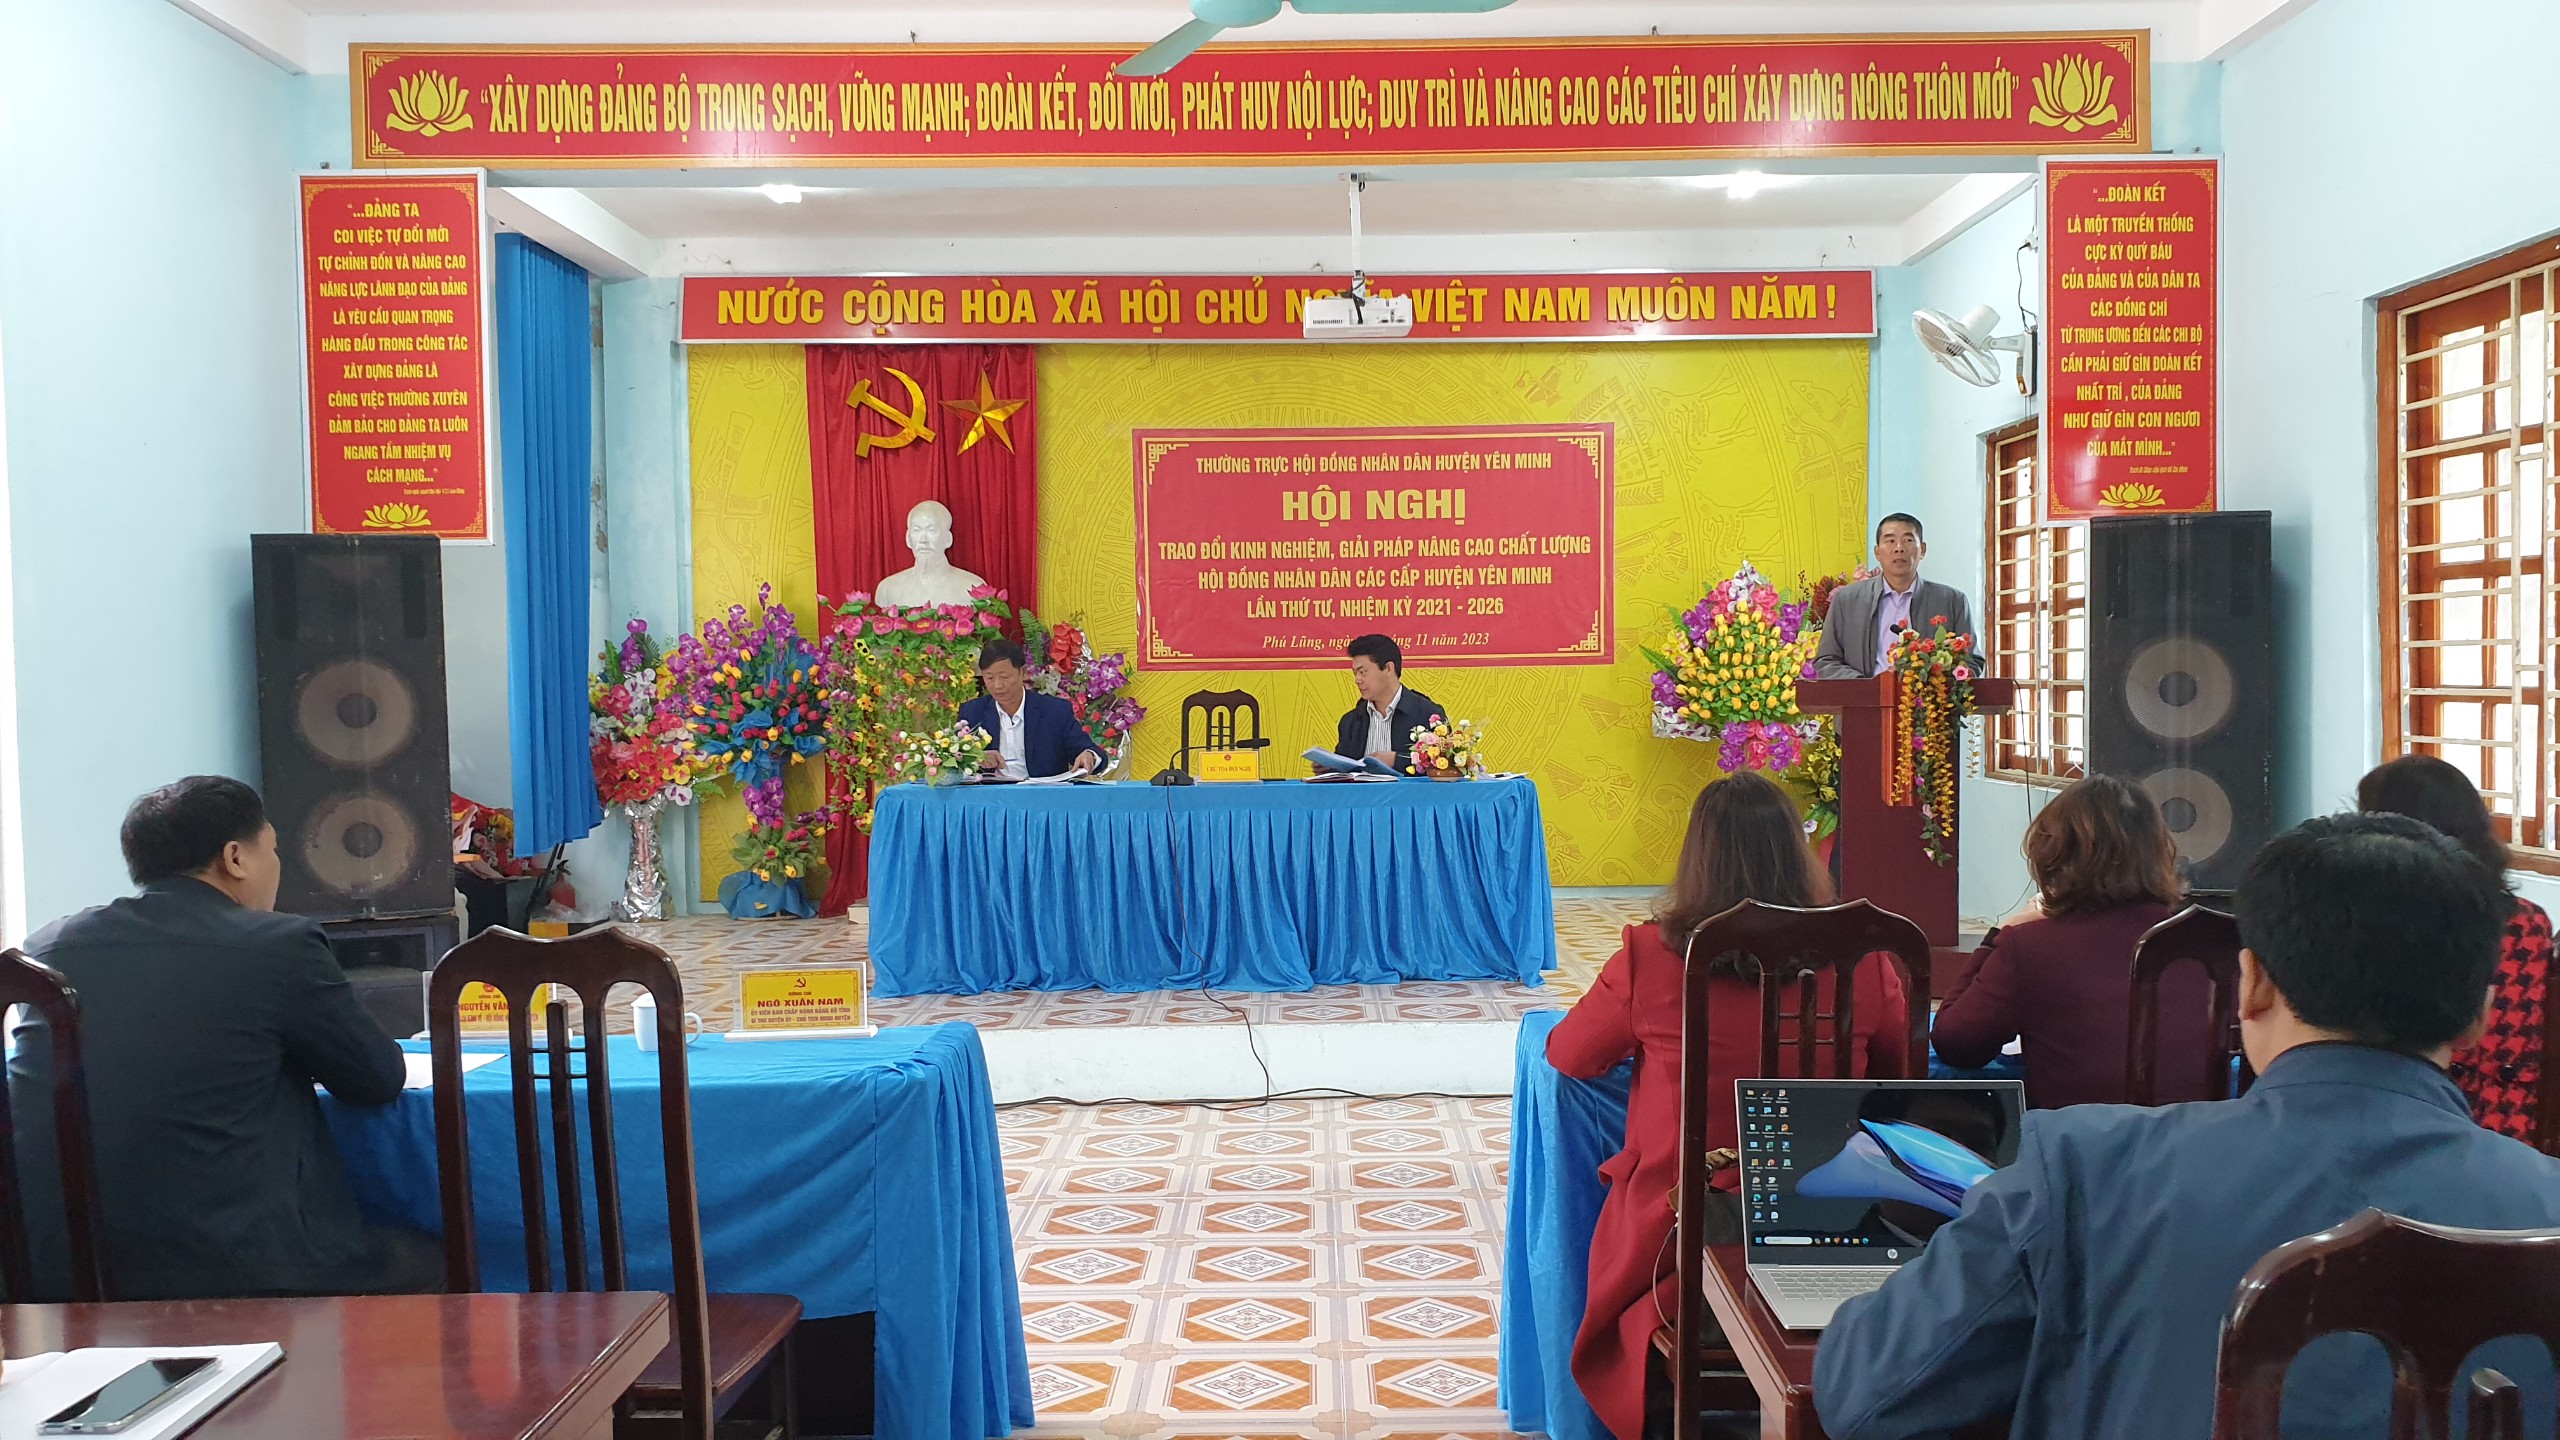 HĐND huyện Yên Minh tổ chức Hội nghị trao đổi kinh nghiệm giữa HĐND các cấp lần thứ 4